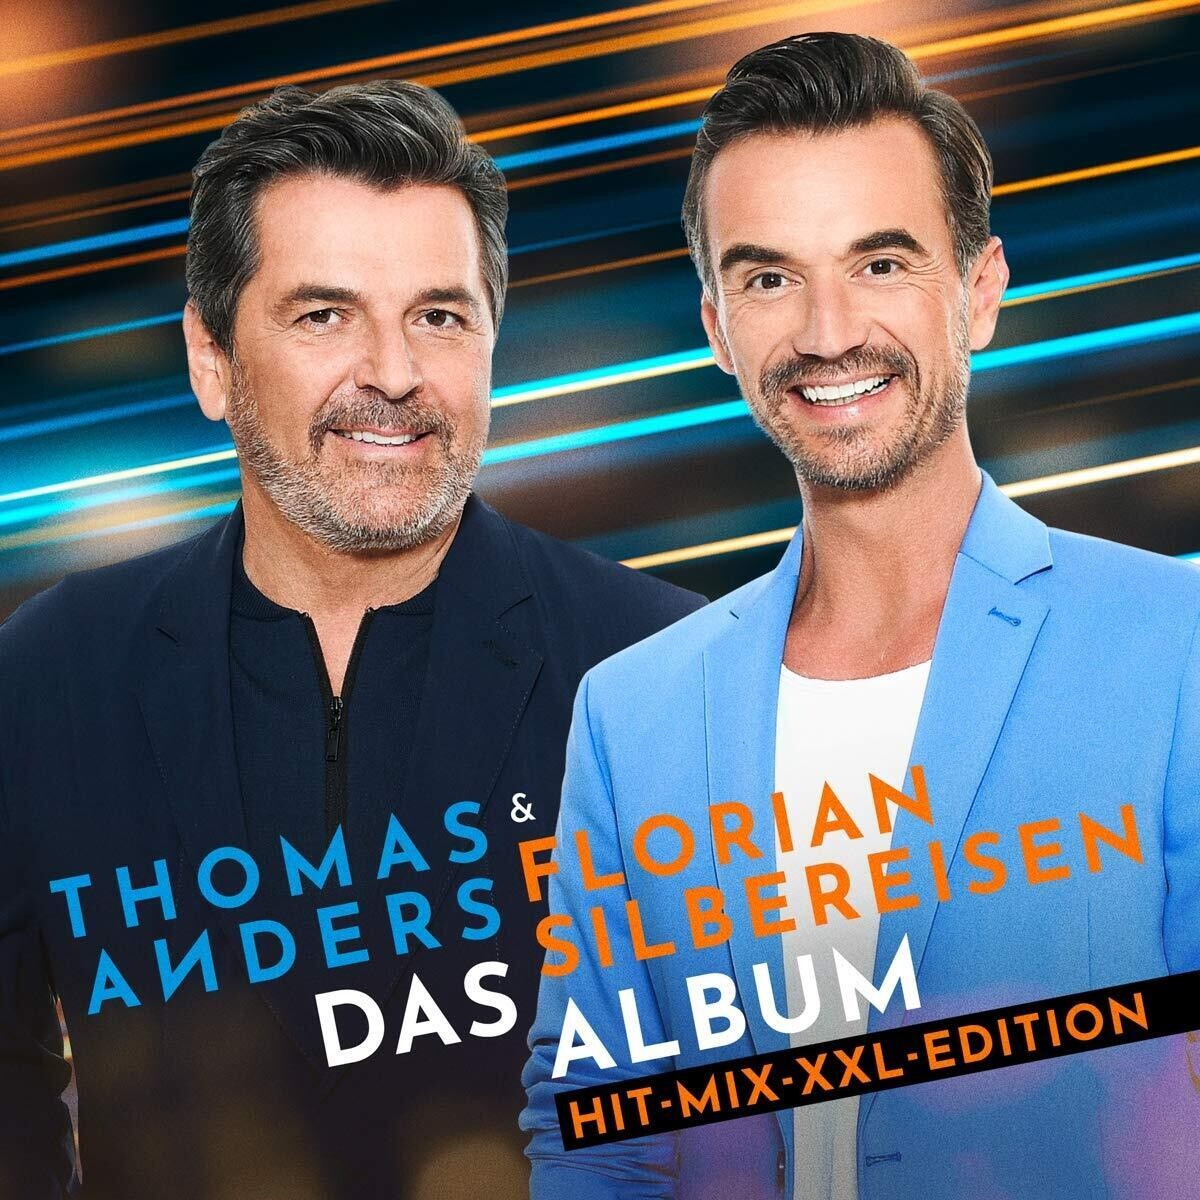 Thomas Anders & Florian Silbereisen - Das Album (Hit-Mix-XXL-Edition)(2021) 2CD